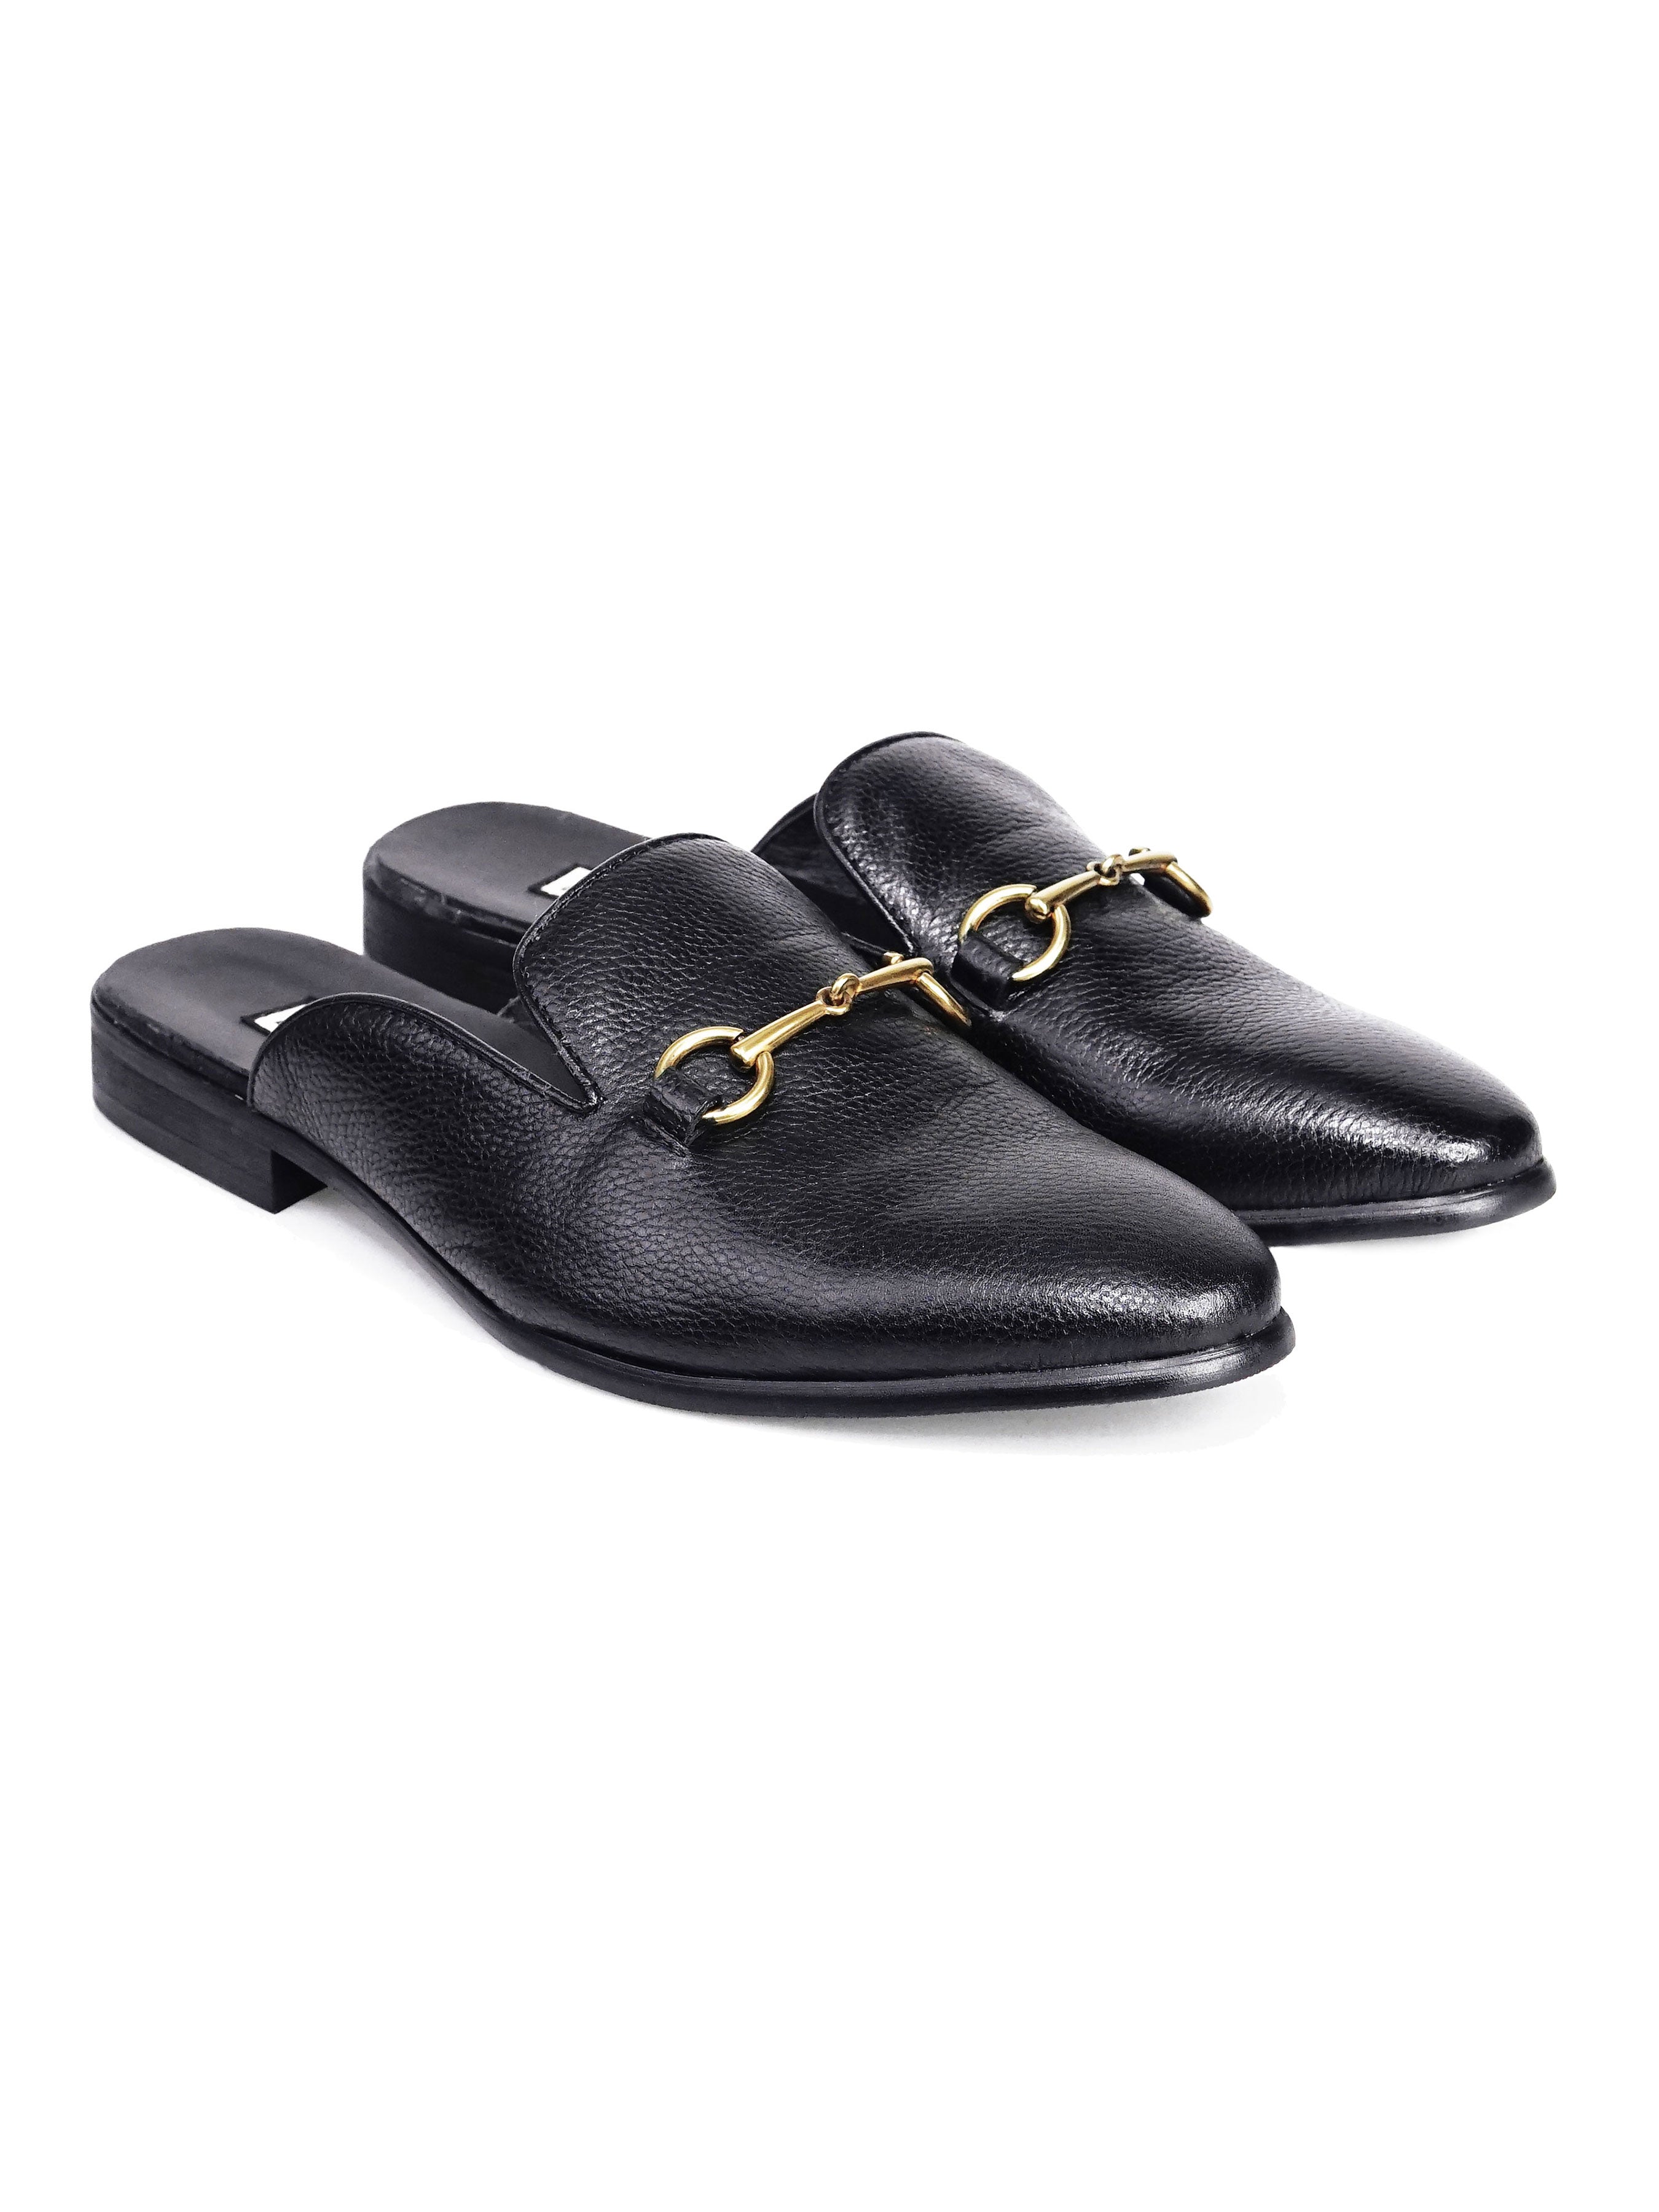 Mules - Black Pebble Grain Leather Horsebit Buckle - Zeve Shoes